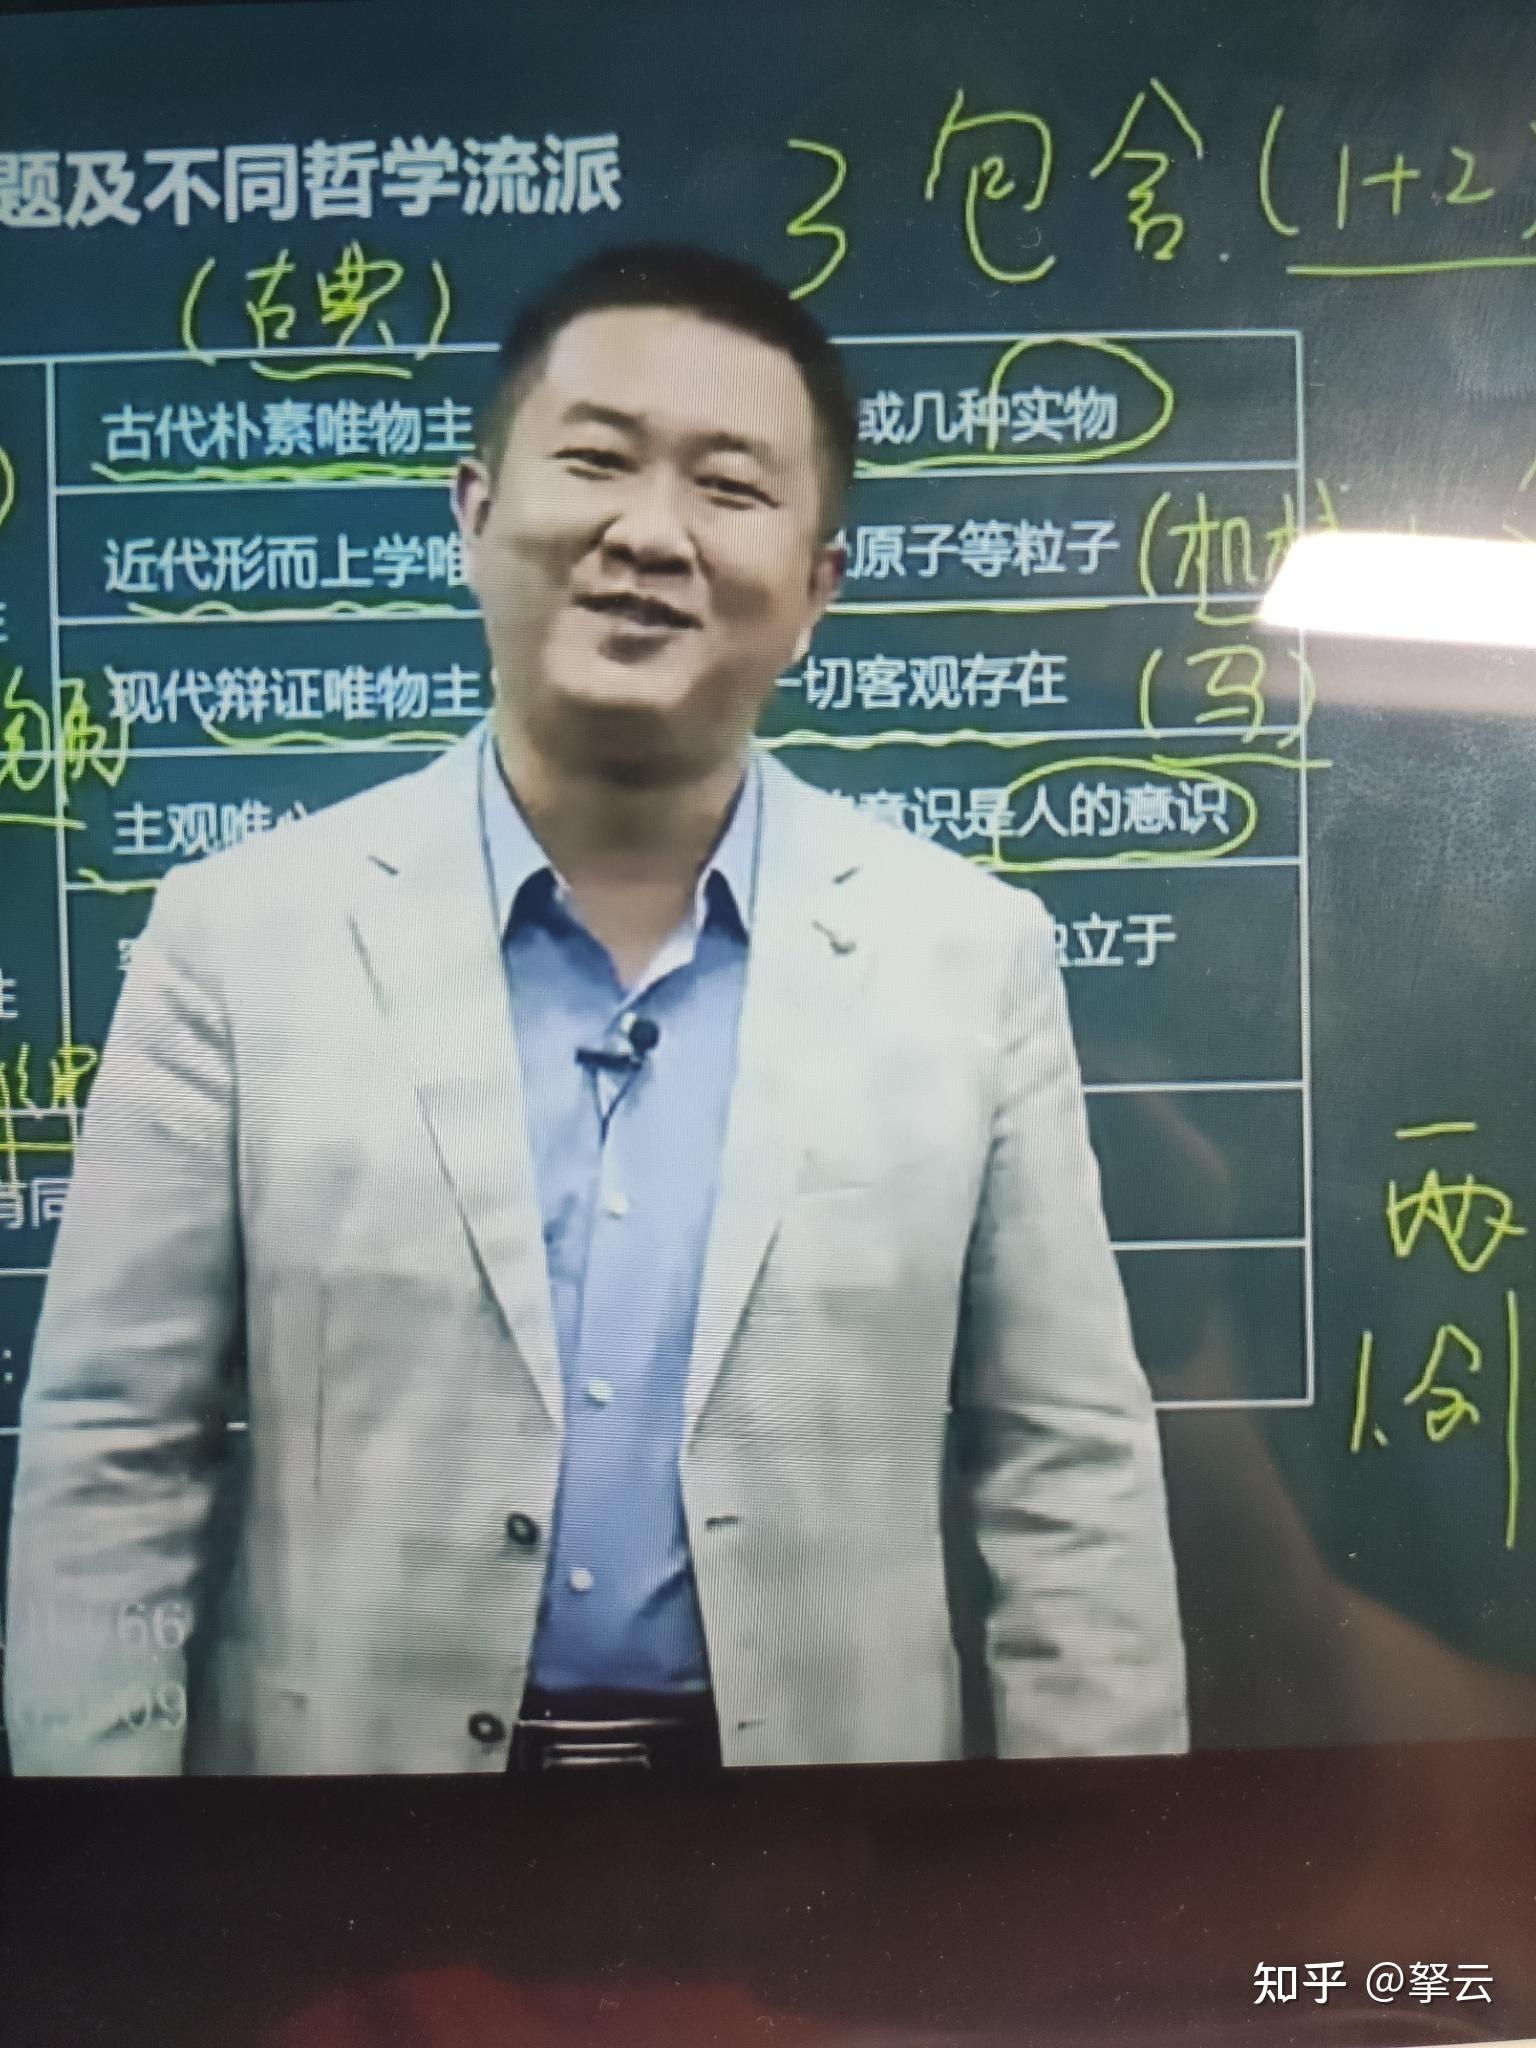 如何评价考研政治老师徐涛? 